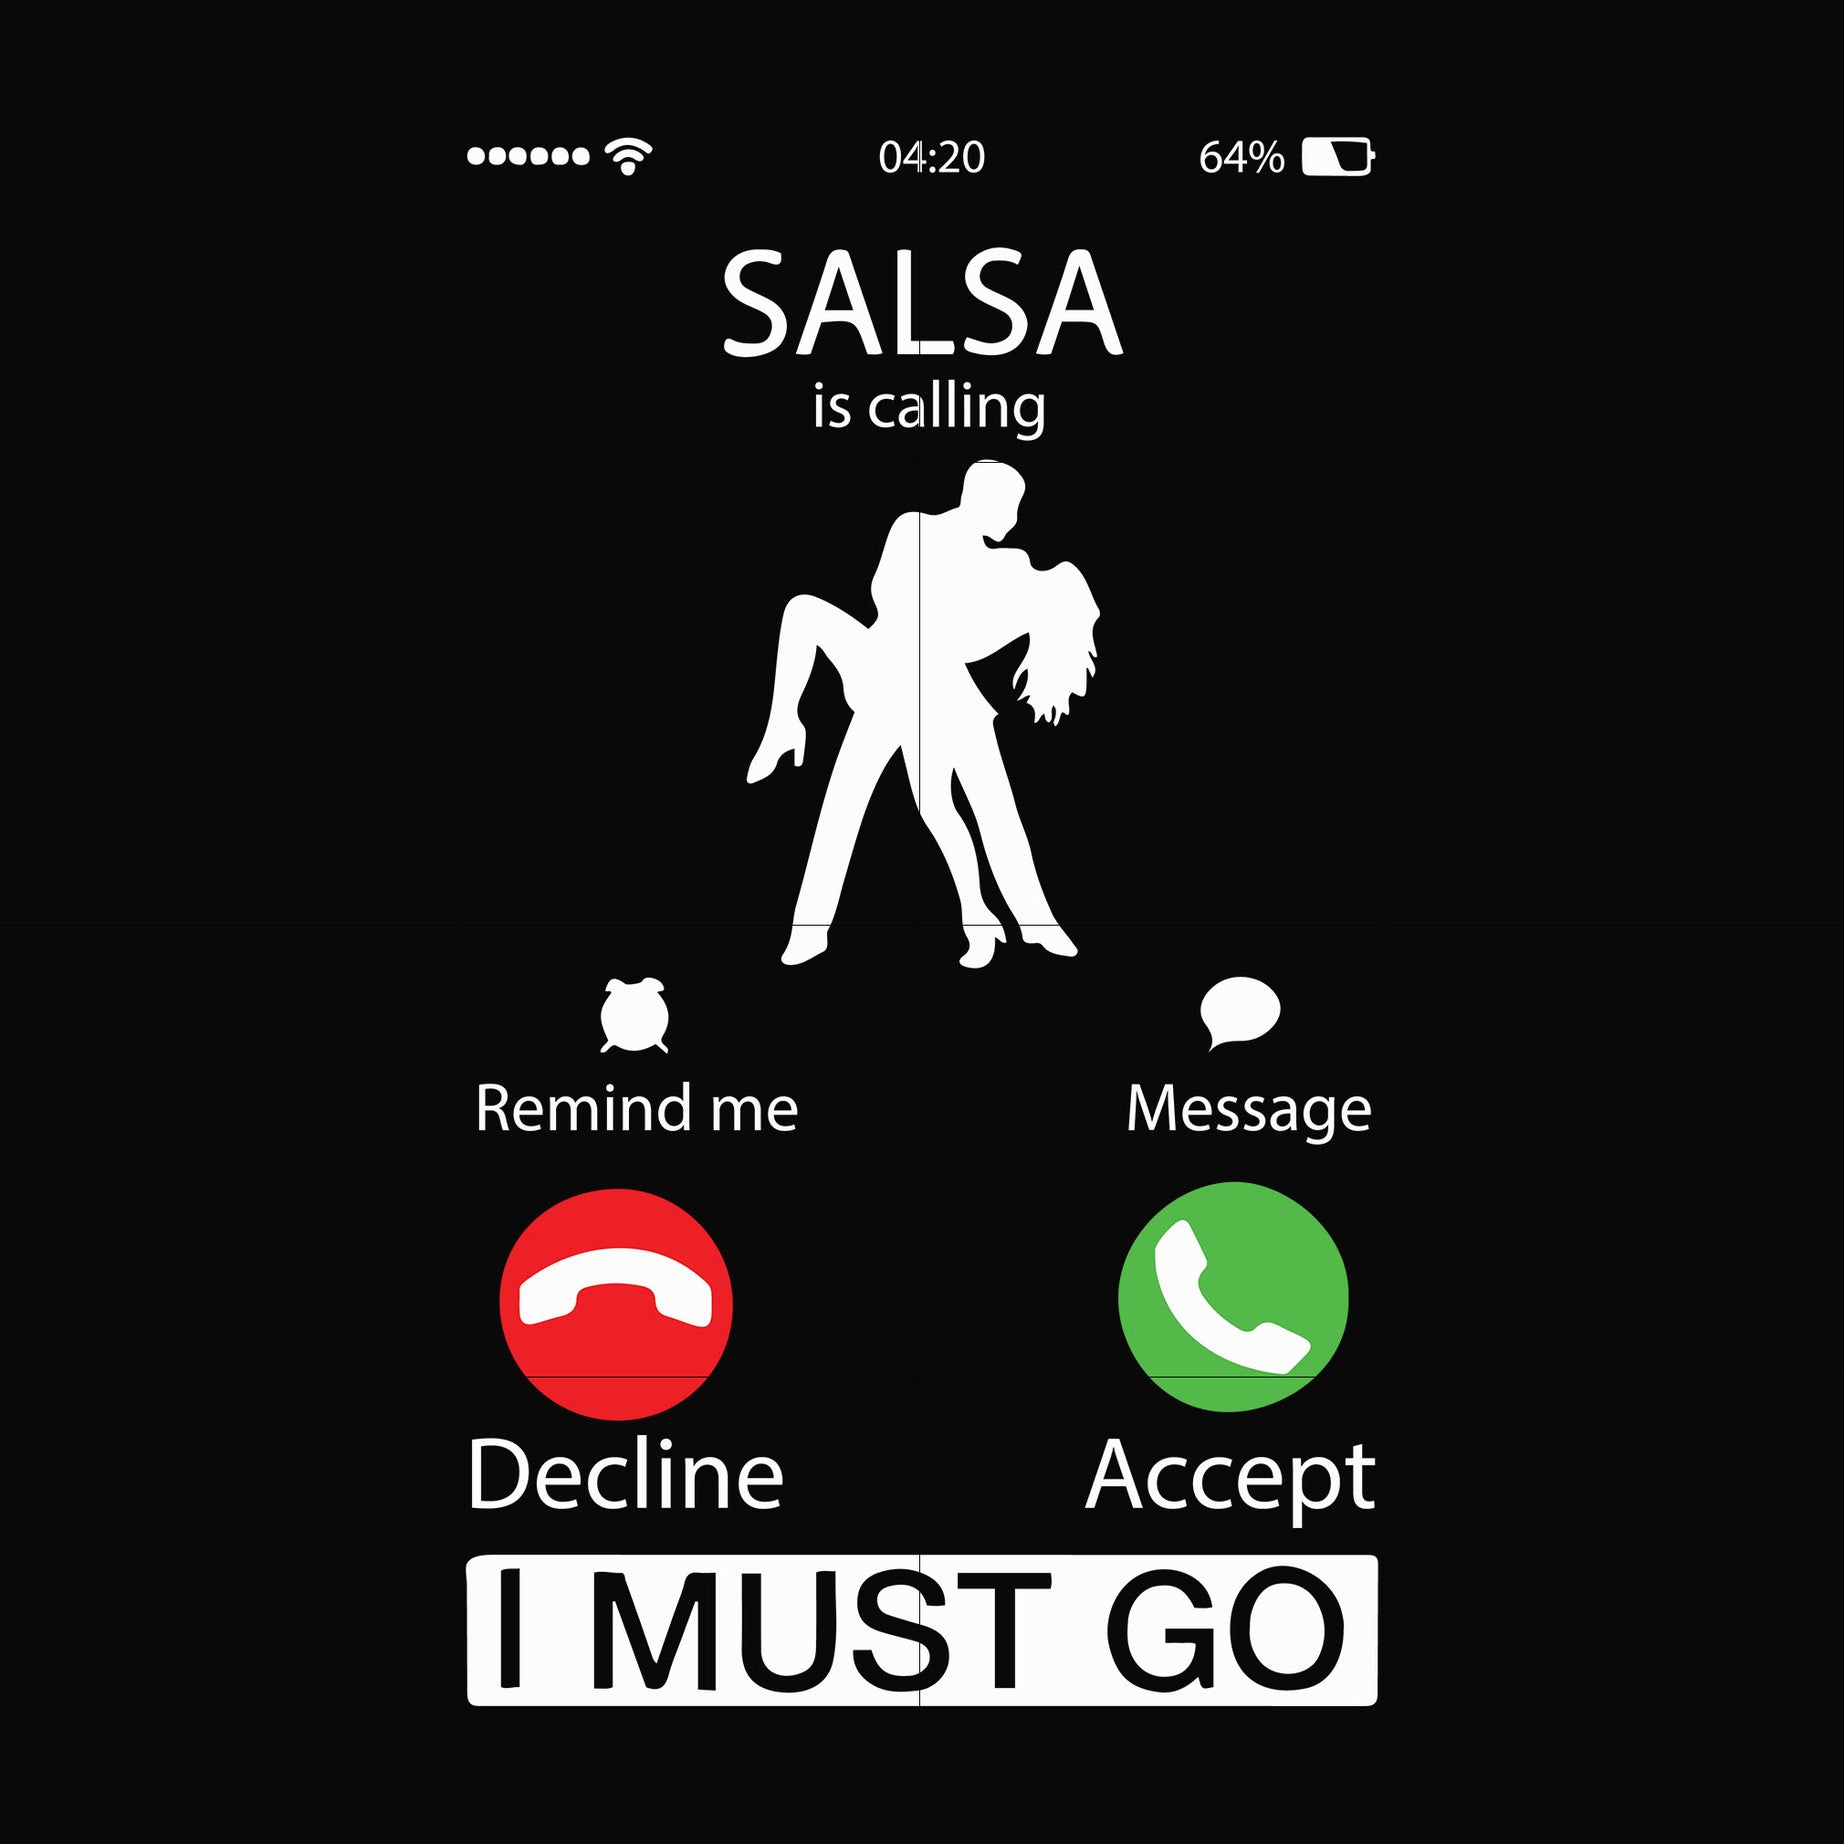 Salsa calling i must go svg, png, dxf, eps digital file OTH0058